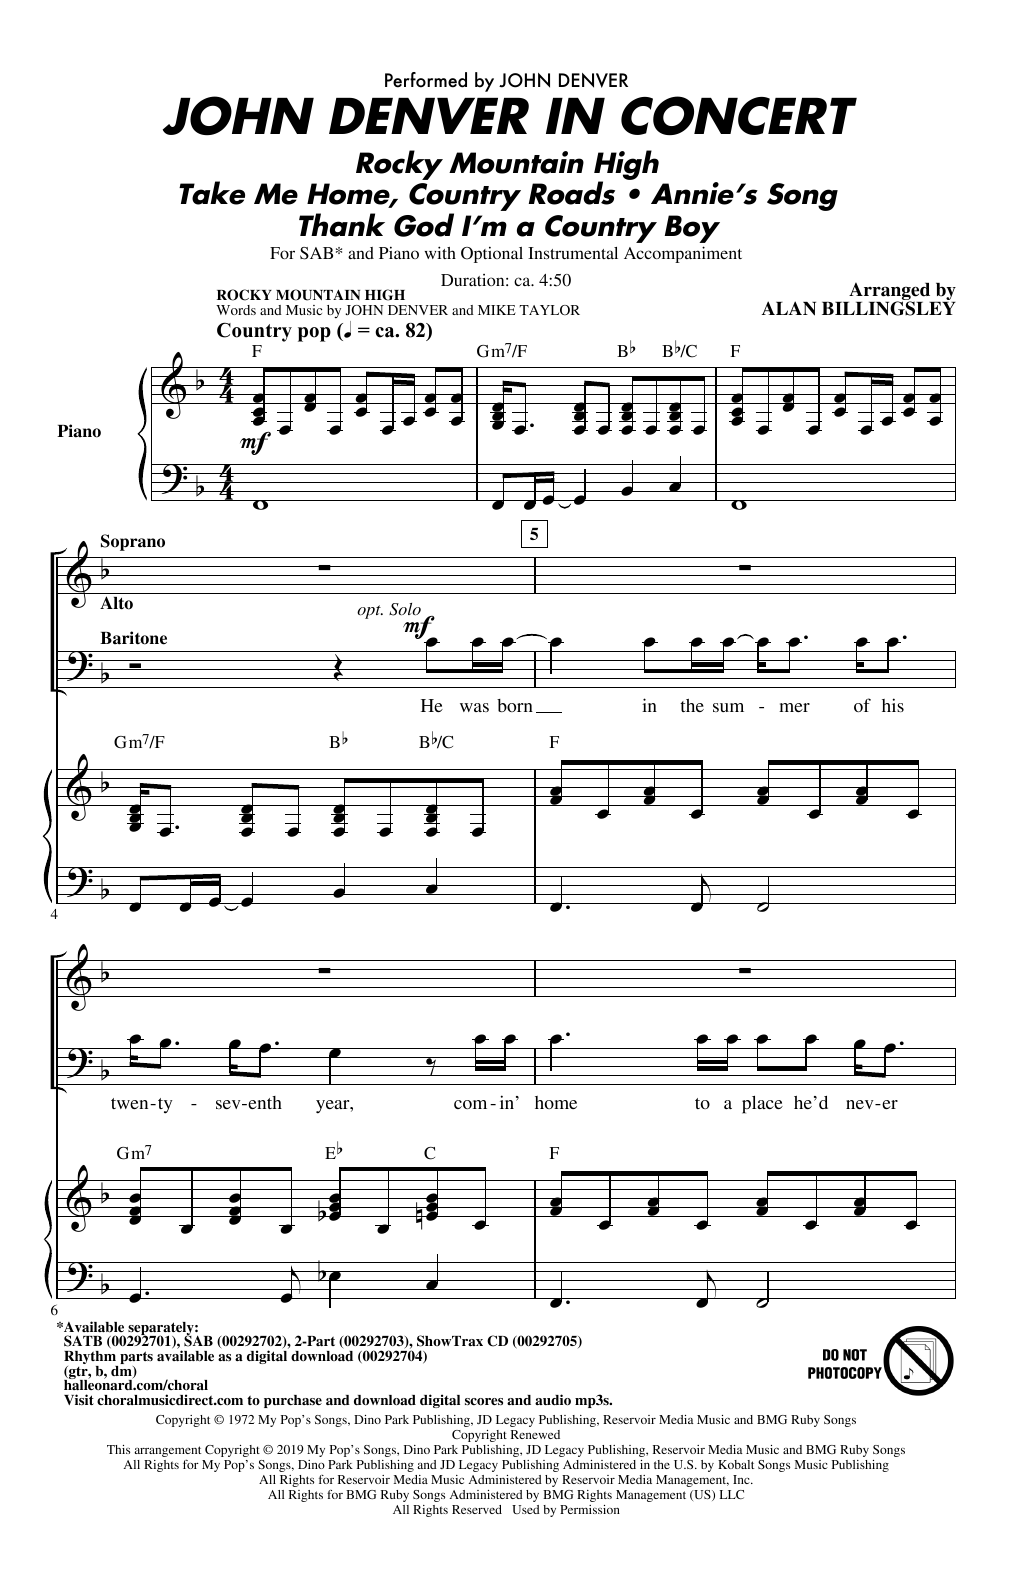 John Denver John Denver In Concert (arr. Alan Billingsley) Sheet Music Notes & Chords for 2-Part Choir - Download or Print PDF